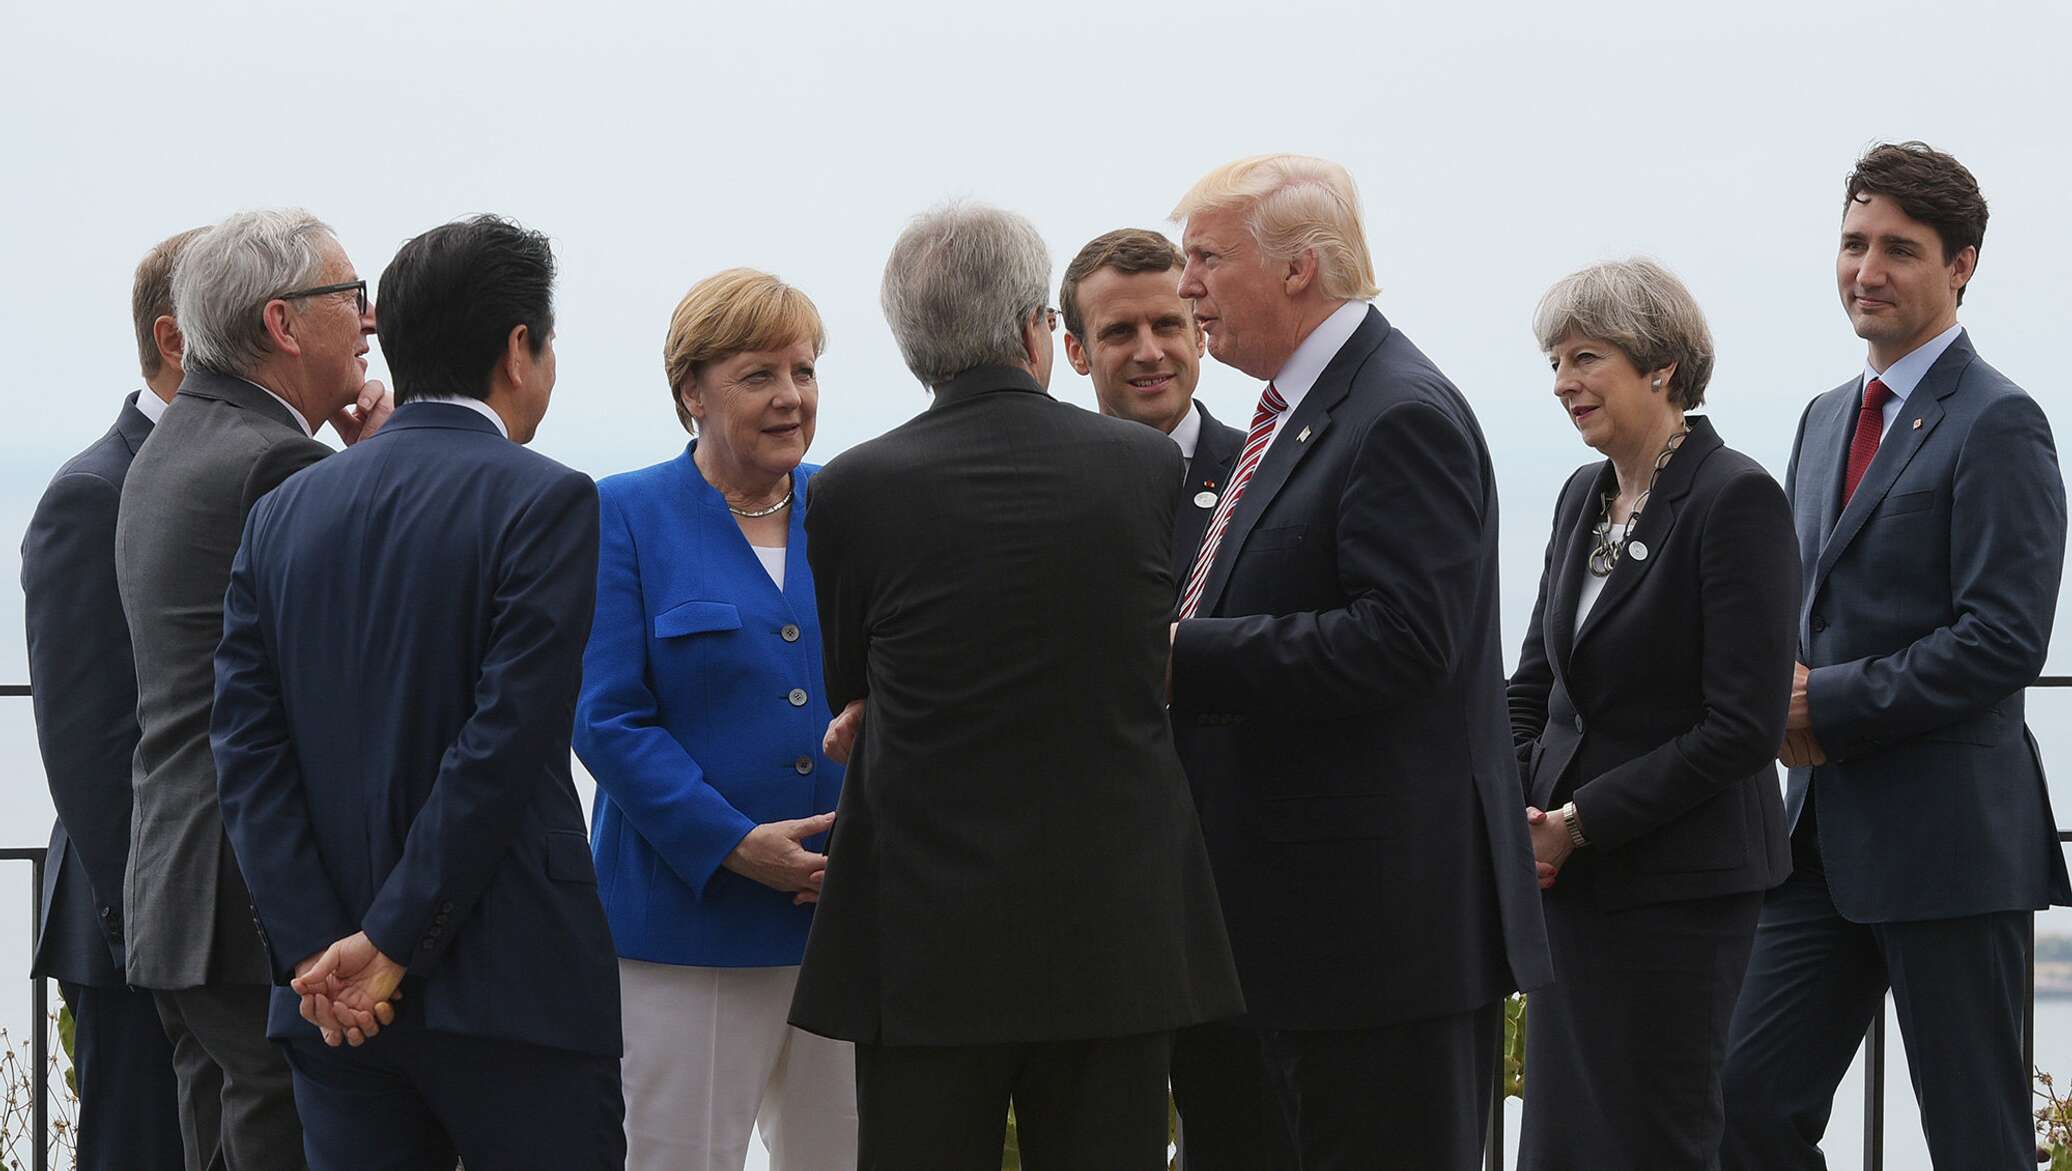 Что означает демарш в дипломатии. Дипломатический демарш. Коммюнике в дипломатии. Фото с саммита в Вильнюсе. Женщины участники саммита НАТО В Вильнюсе с ото.